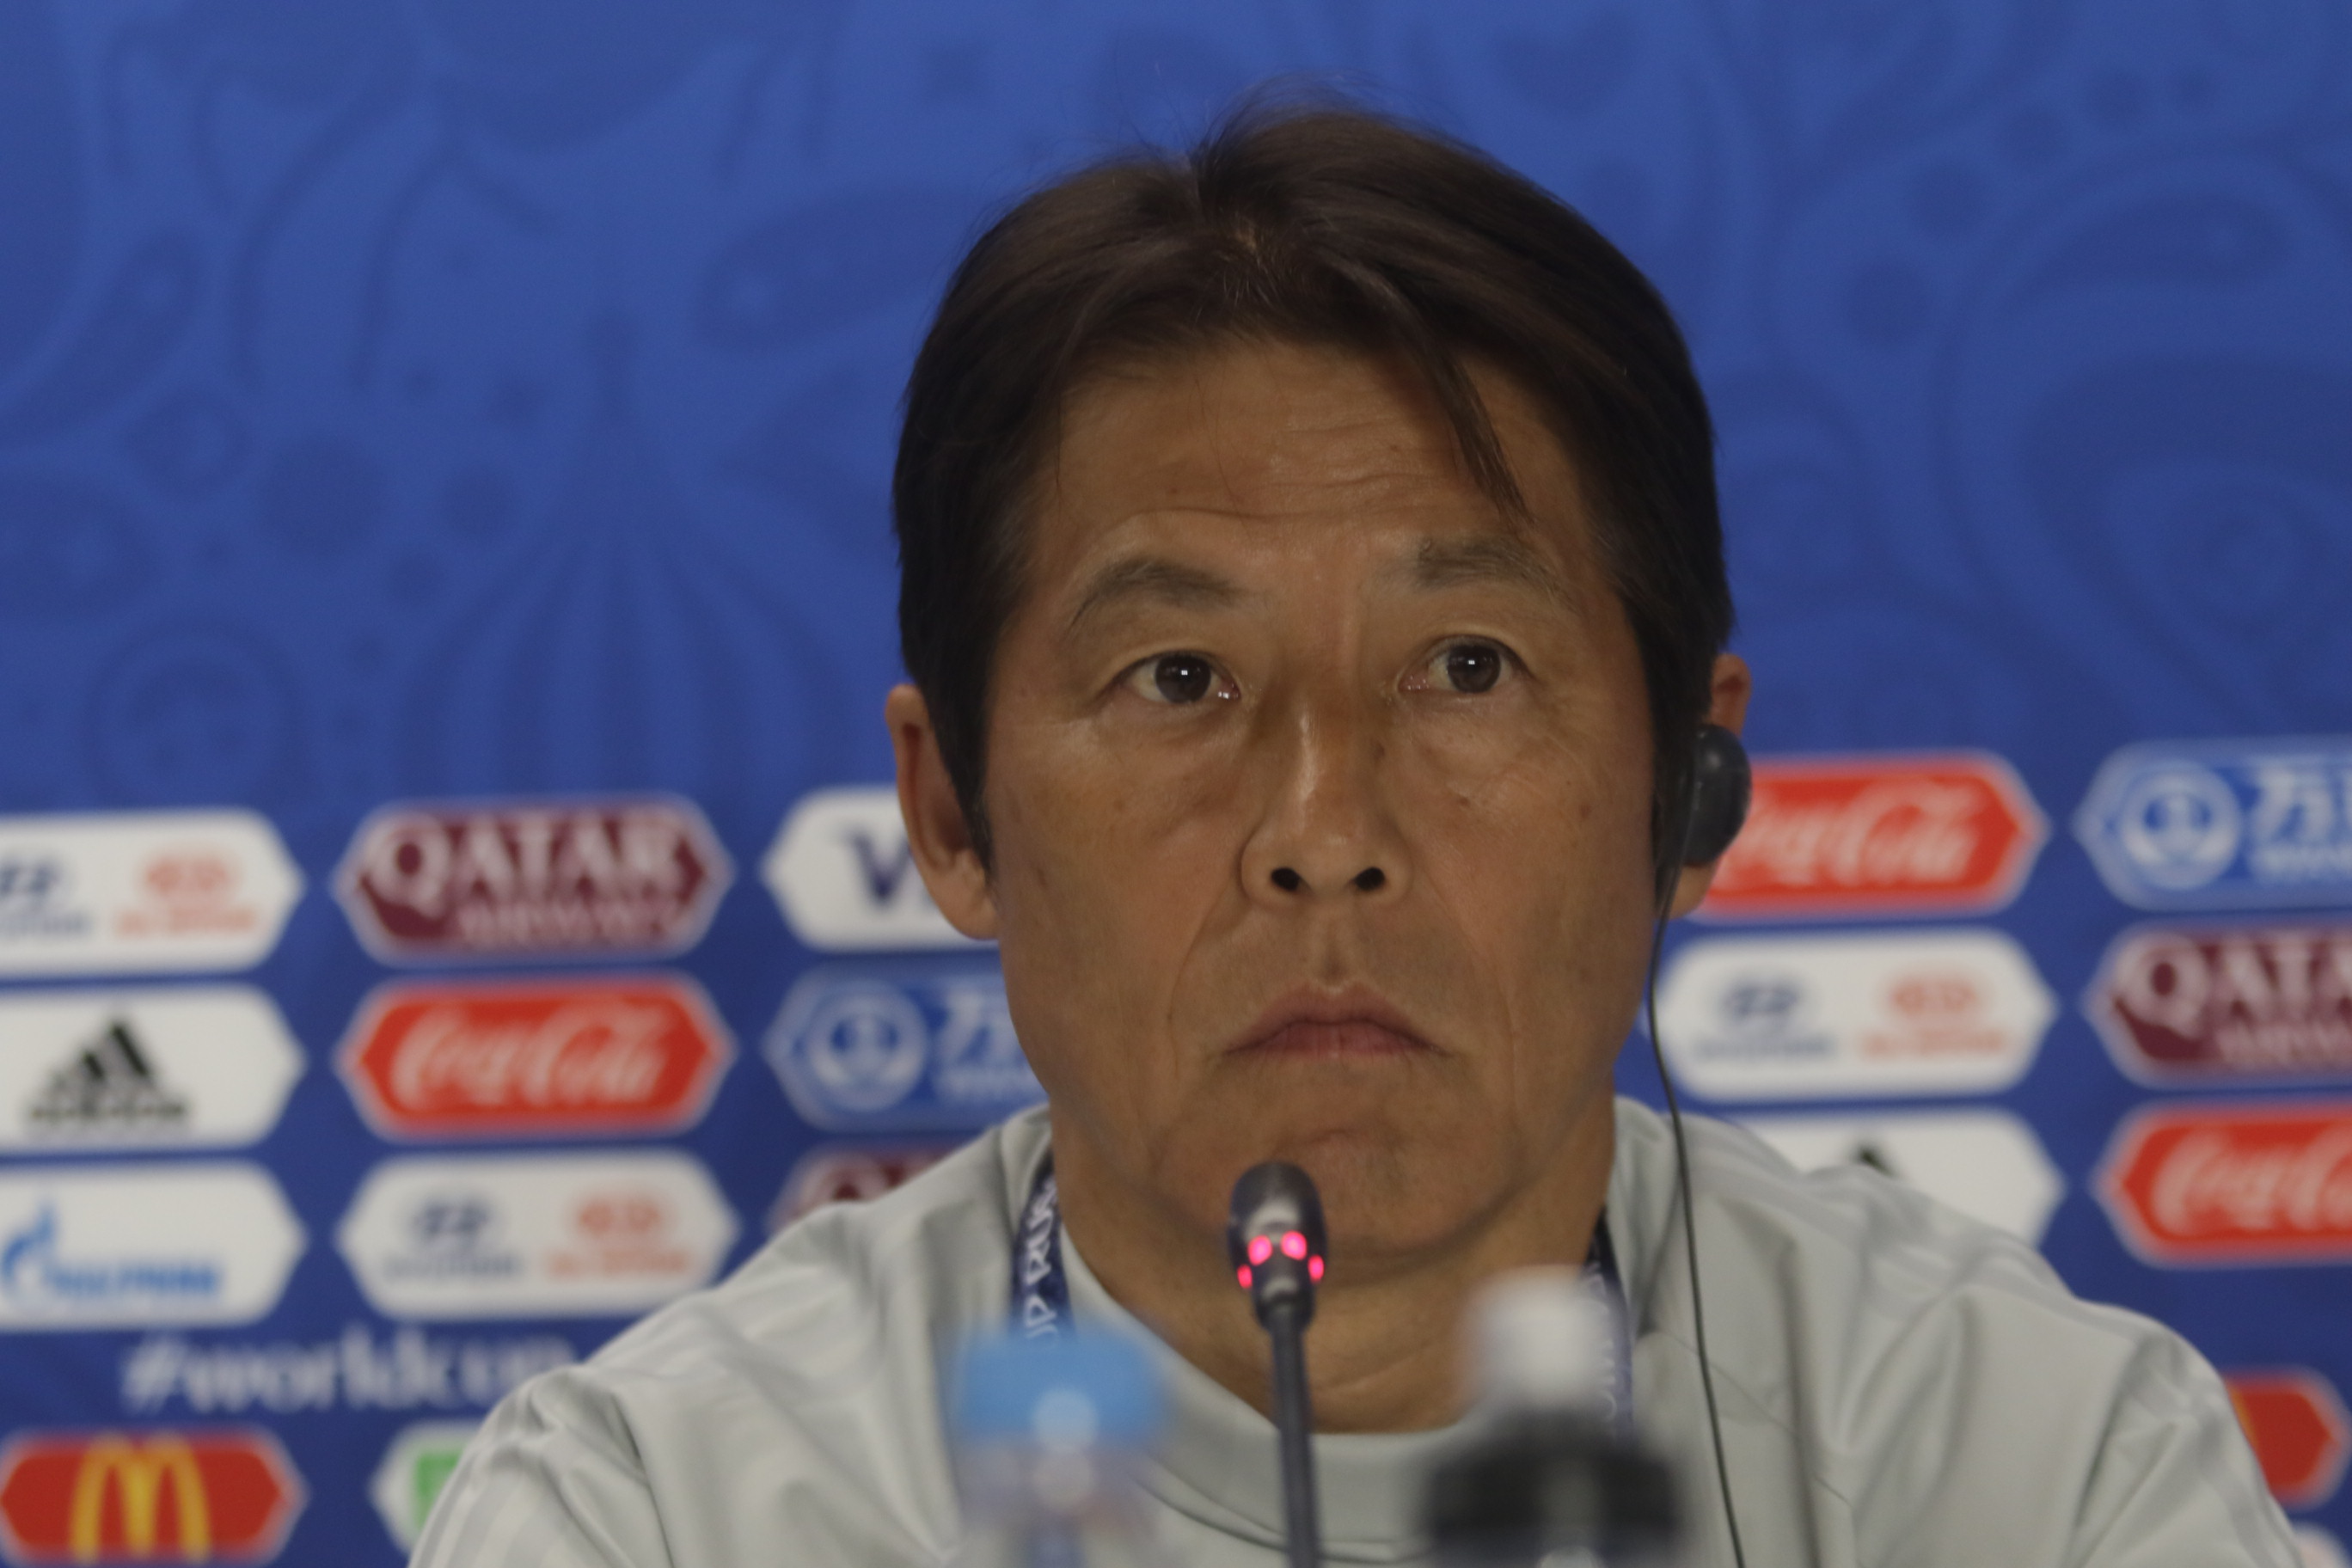 Akira Nishino, coach du Japon : «J'ai du mal à trouver des faiblesses dans cette équipe du Sénégal»